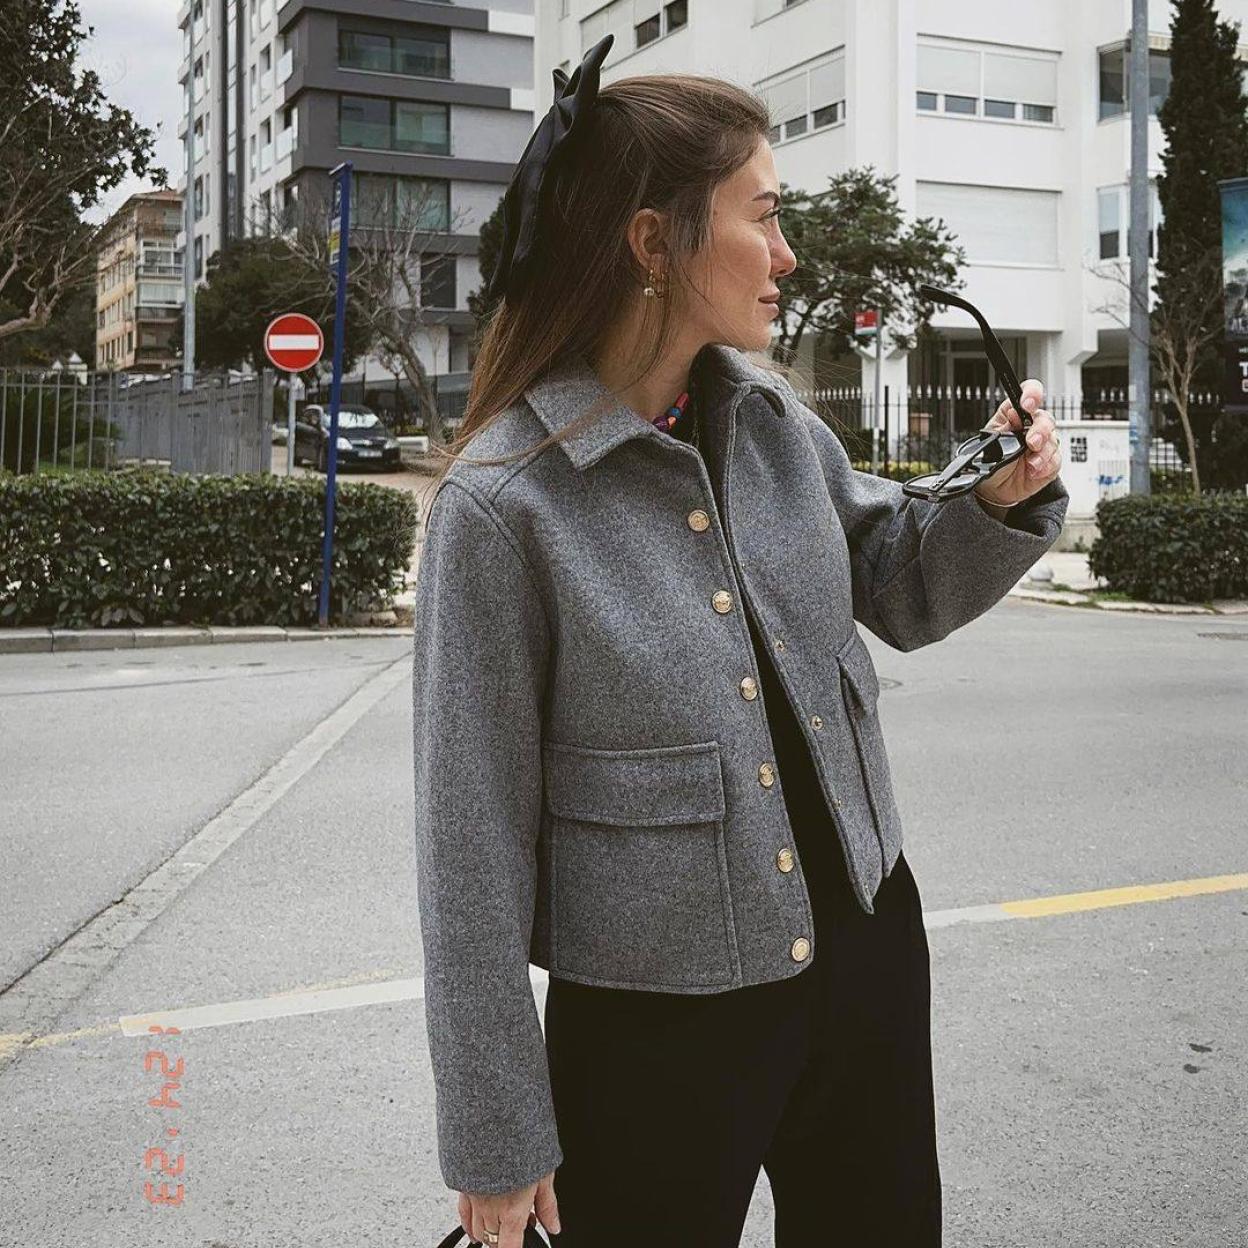 La influencer lleva la elegante chaqueta superventas de Zara/@GULIZUZER